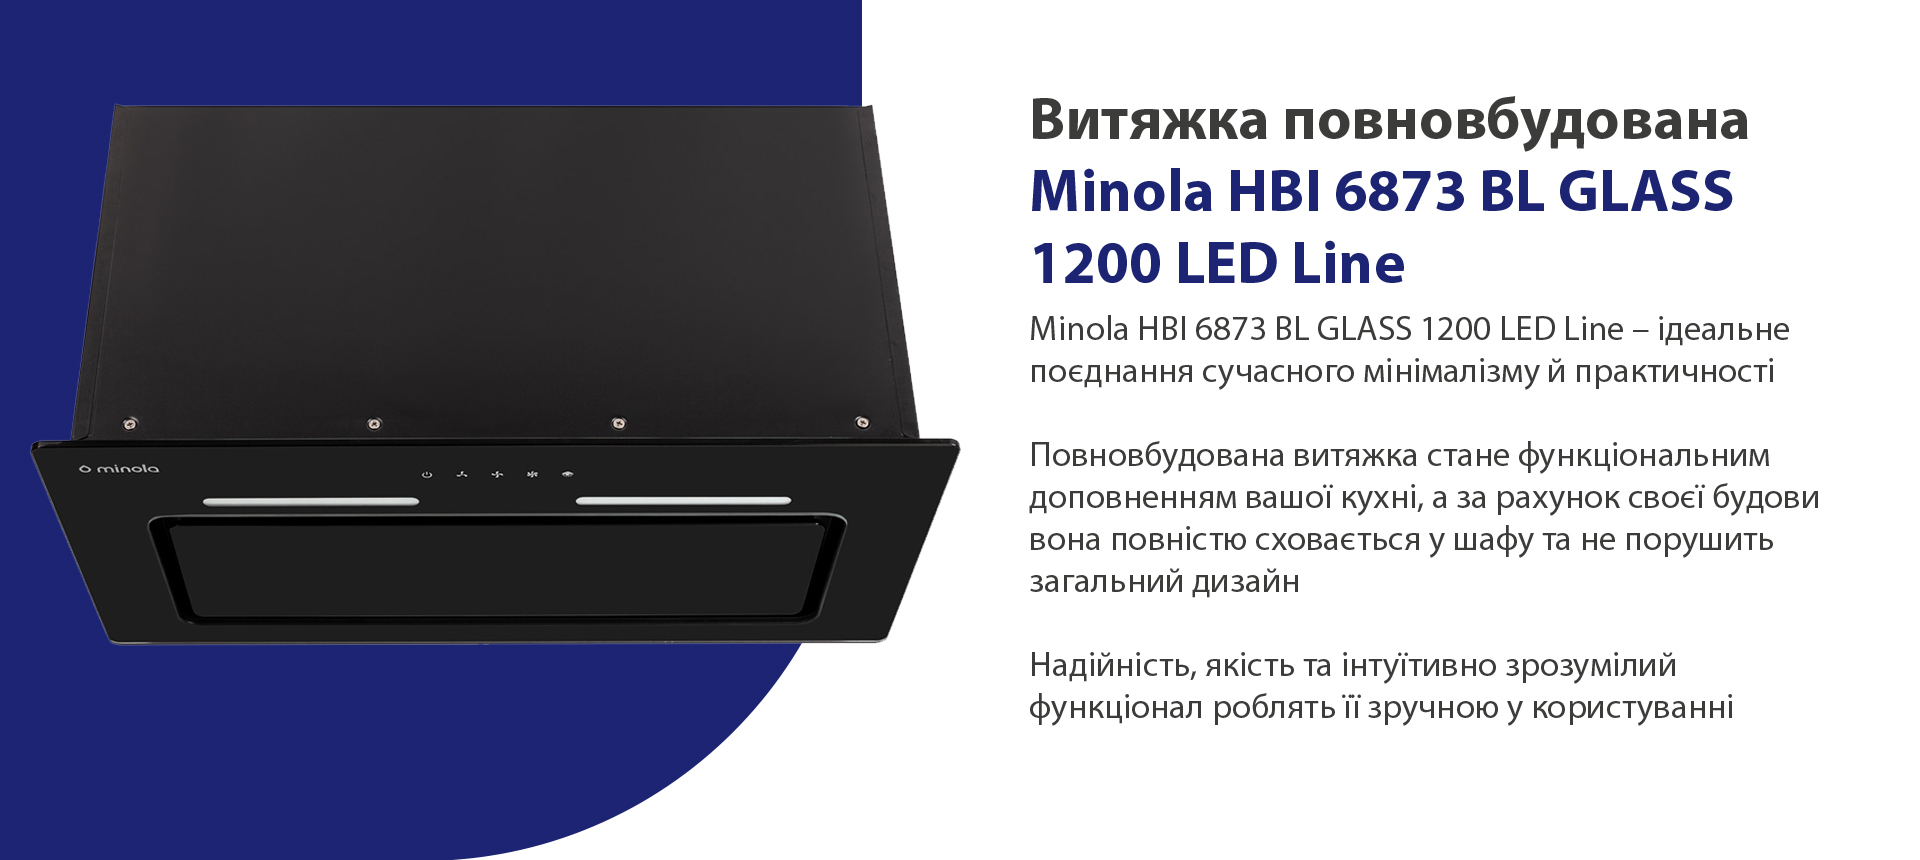 Minola HBI 6873 BL GLASS 1200 LED Line – ідеальне поєднання сучасного мінімалізму й практичності. Повновбудована витяжка стане функціональним доповненням вашої кухні, а за рахунок своєї будови вона повністю сховається у шафу та не порушить загальний дизайн. Надійність, якість та інтуїтивно зрозумілий функціонал роблять її зручною у користуванні